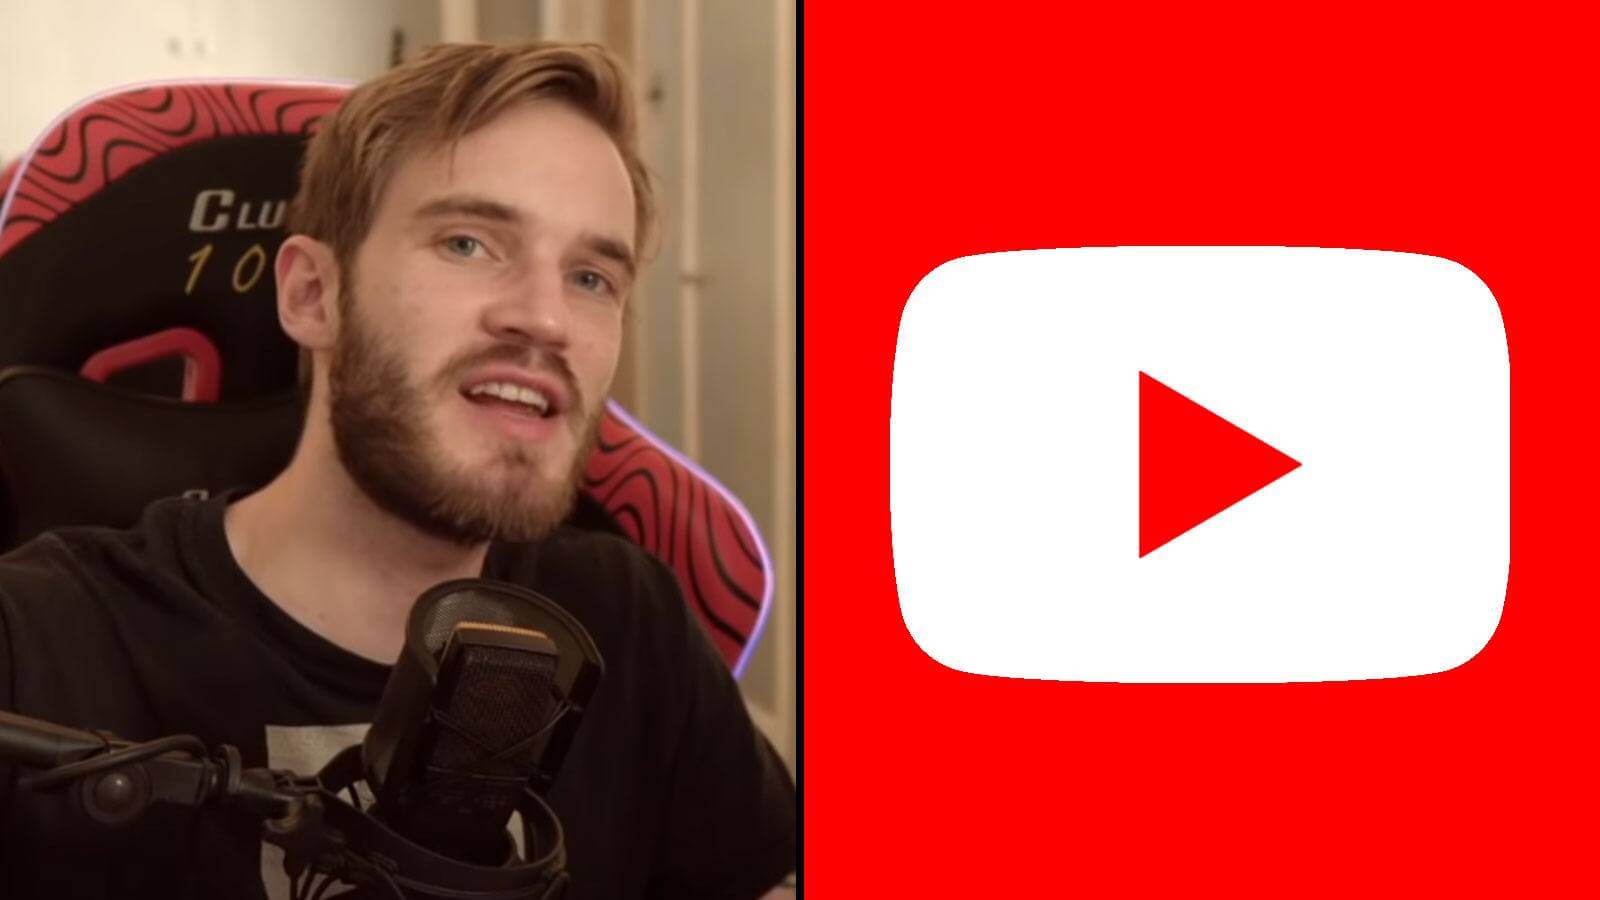 Le youtubeur suédois PewDiePie